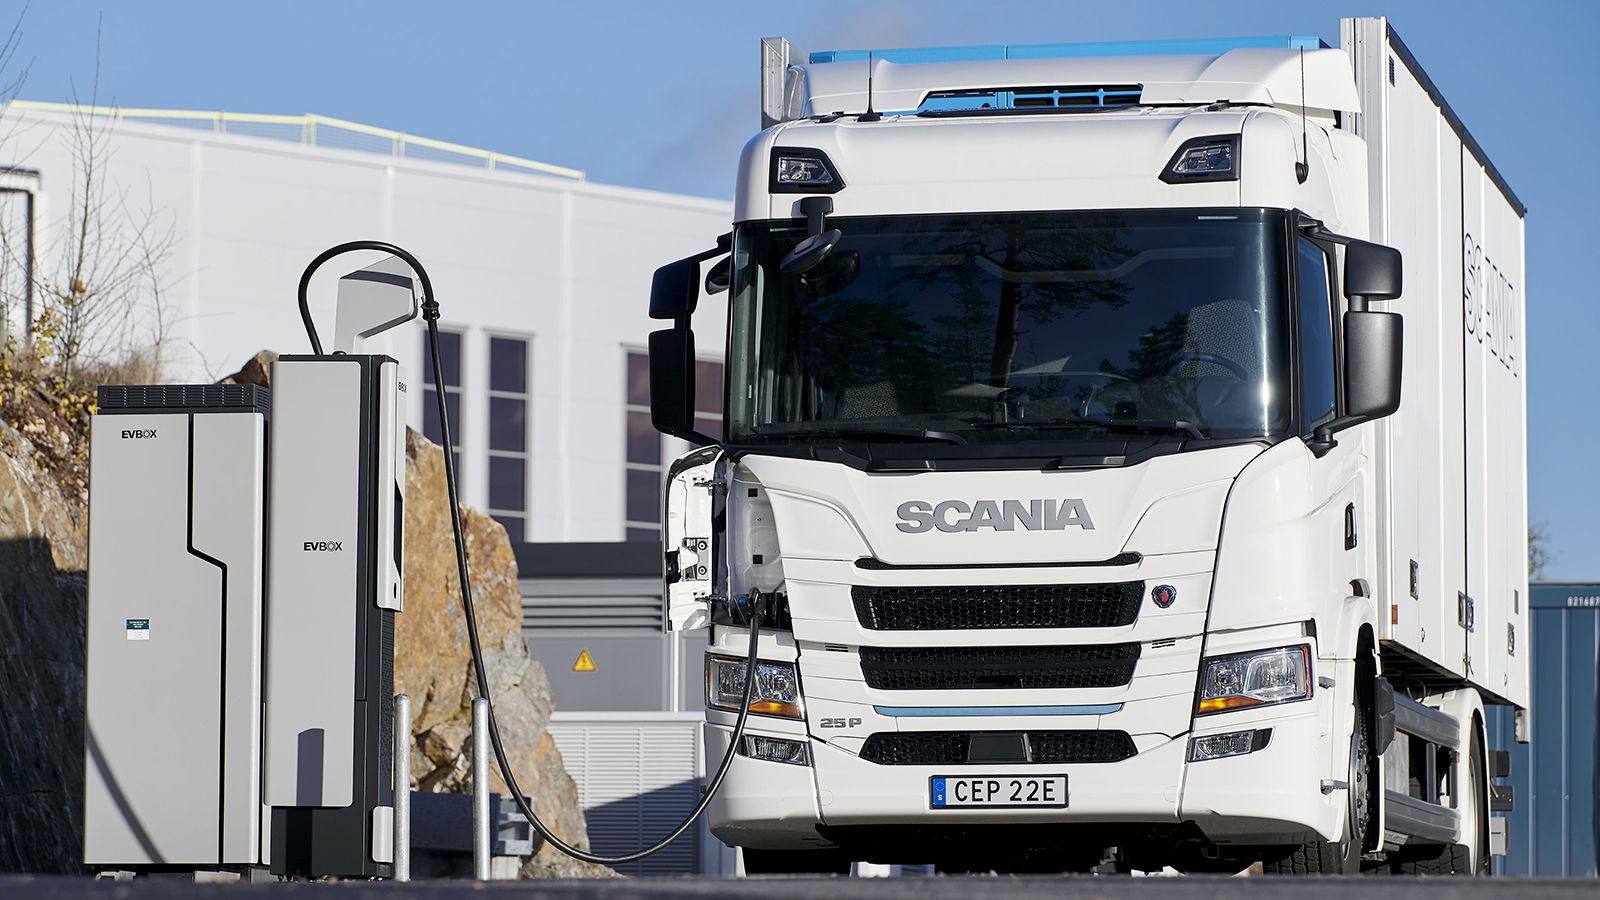 Σχεδόν 100 λεπτά φόρτισης σε έναν σταθμό των 130 kW απαιτούν οι μεγάλες μπαταρίες των 300 kWh, για να προσδώσουν στο ηλεκτρικό Scania μέγιστη αυτονομία 250 χλμ. 